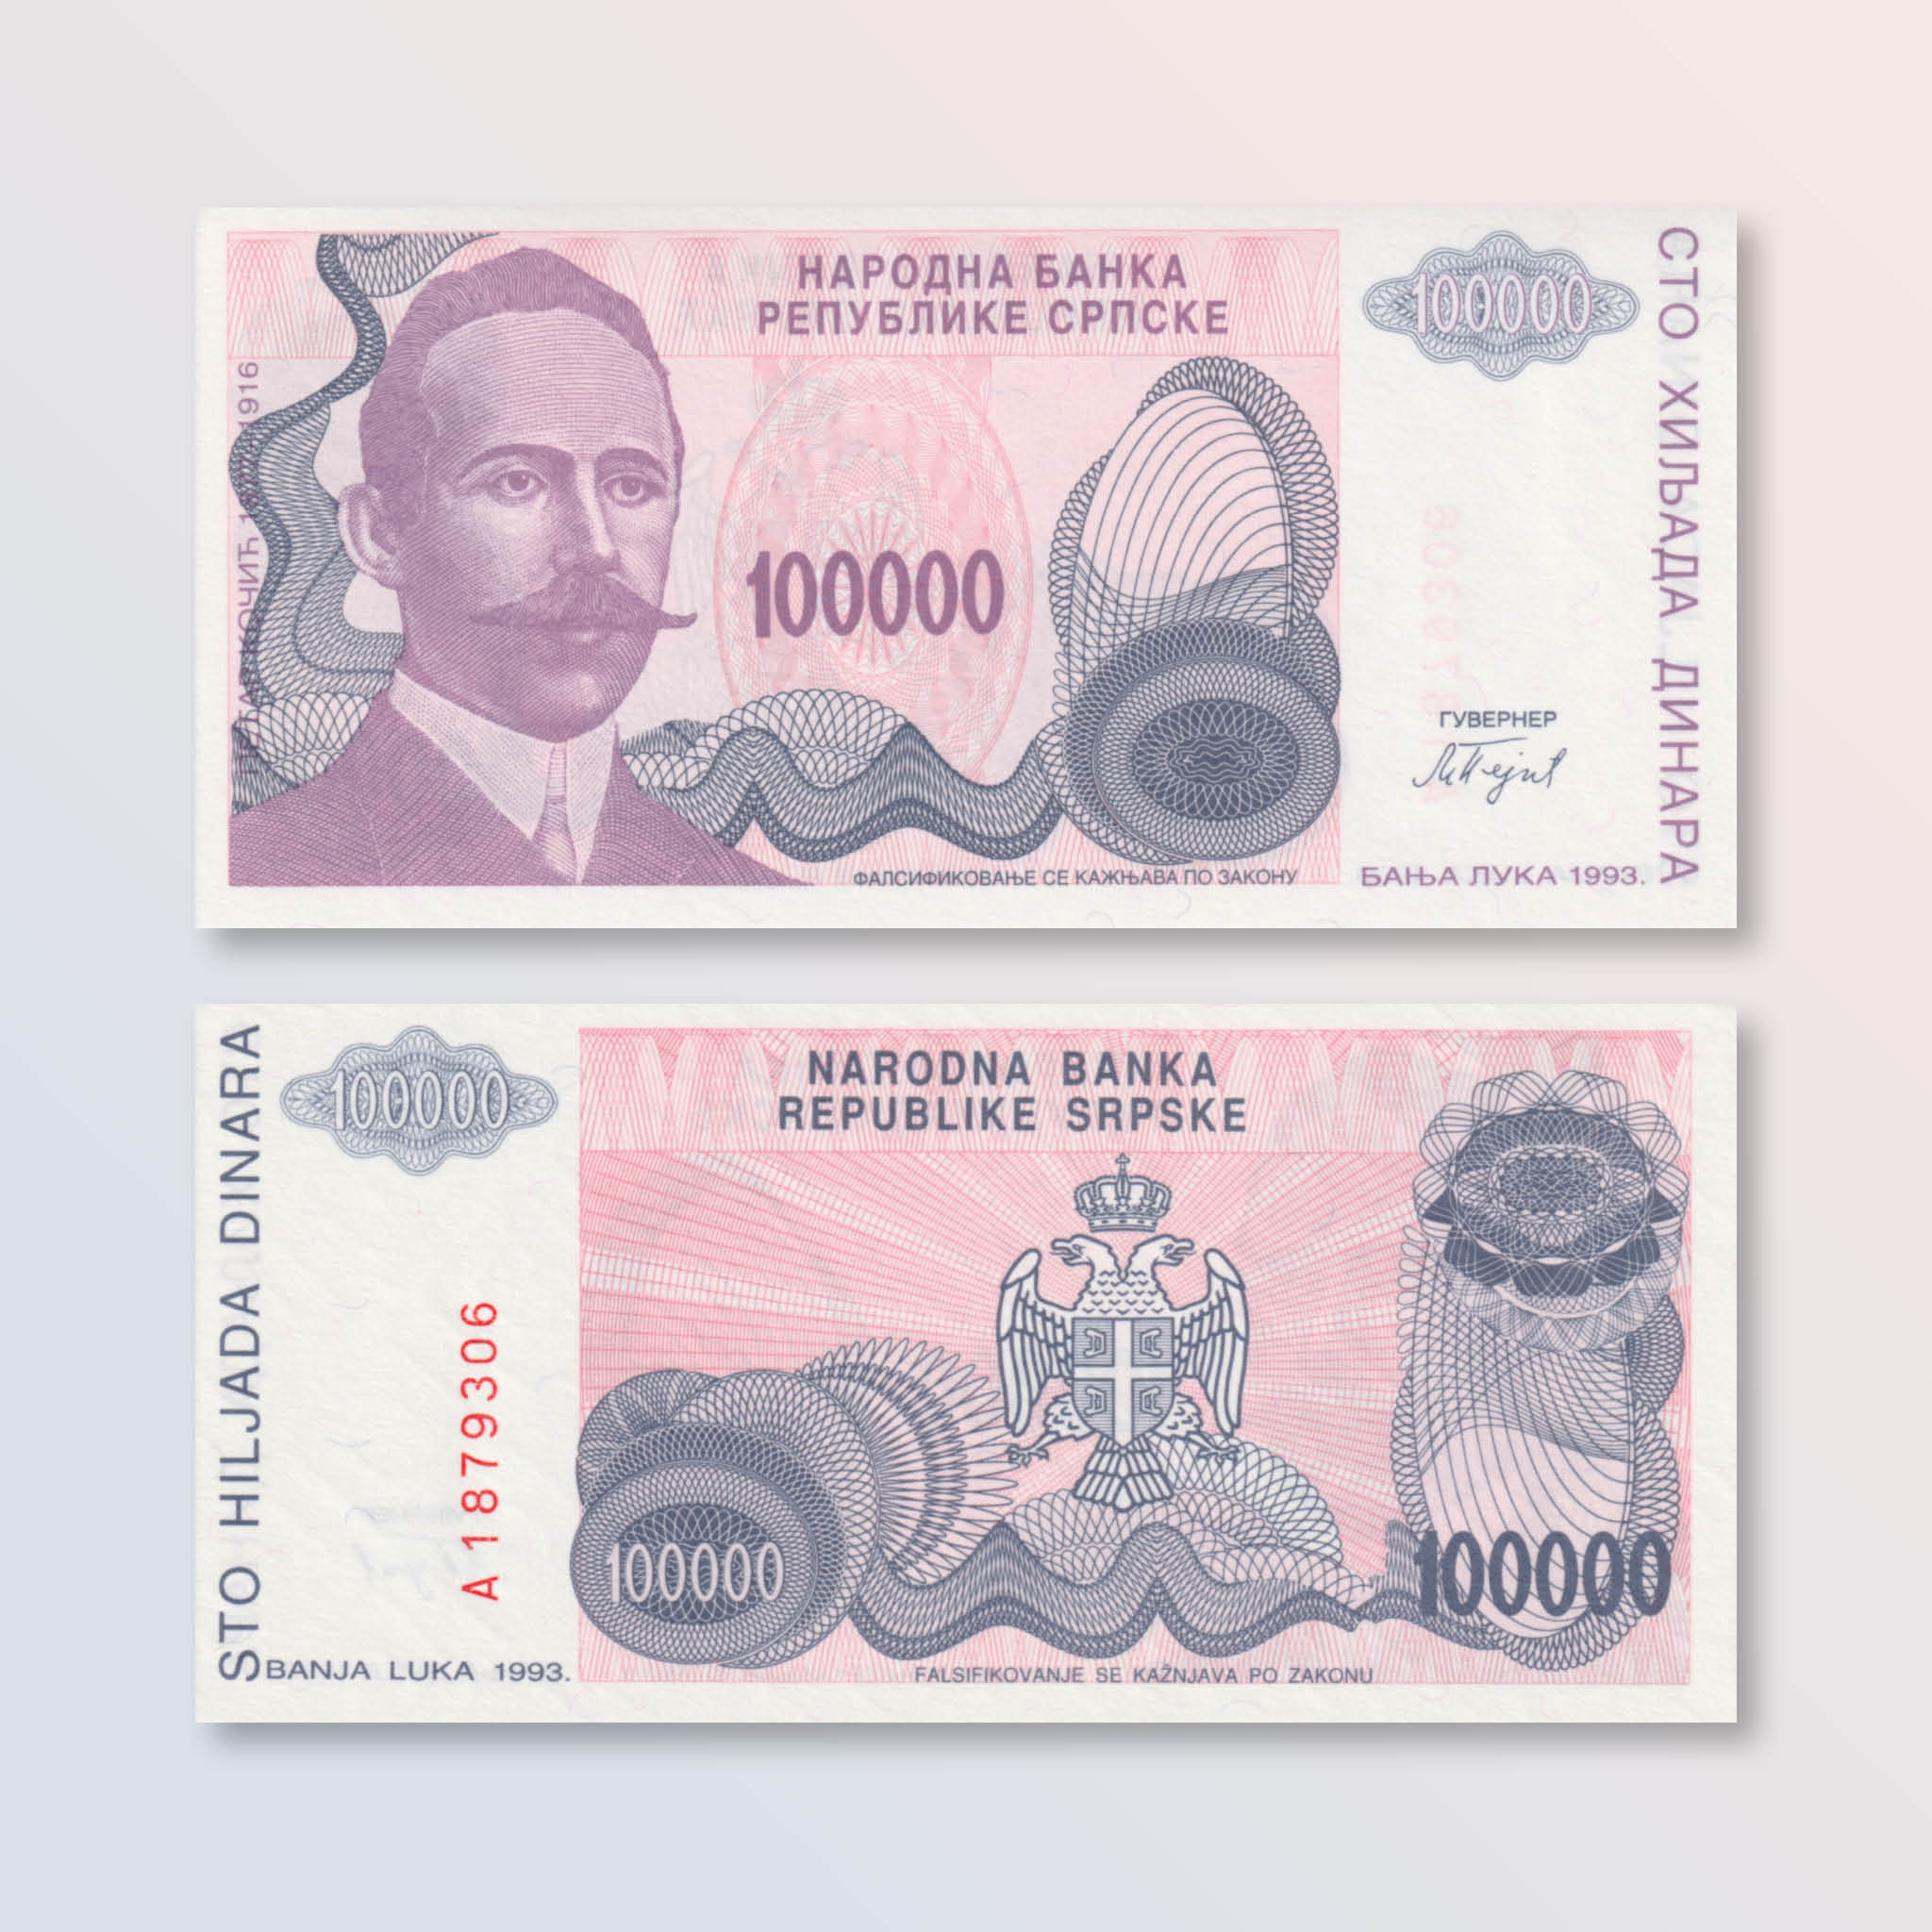 Republika Srpska 100000 Dinars, 1993, B207a, P154a, UNC - Robert's World Money - World Banknotes